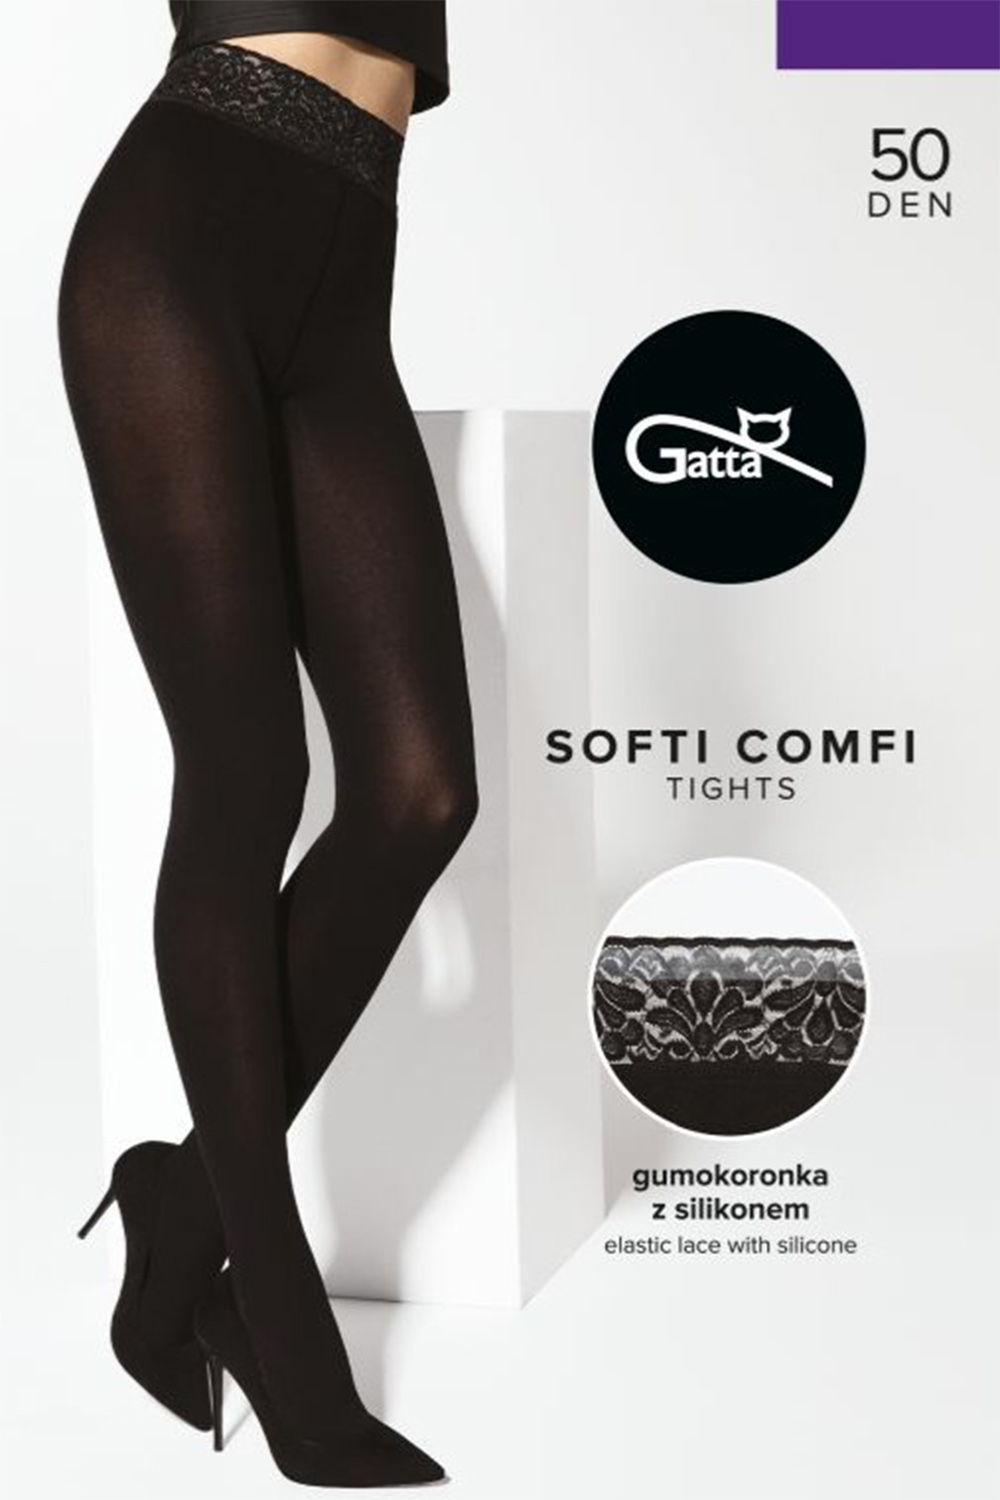 Gatta Softi-Comfi 50 DEN - nero